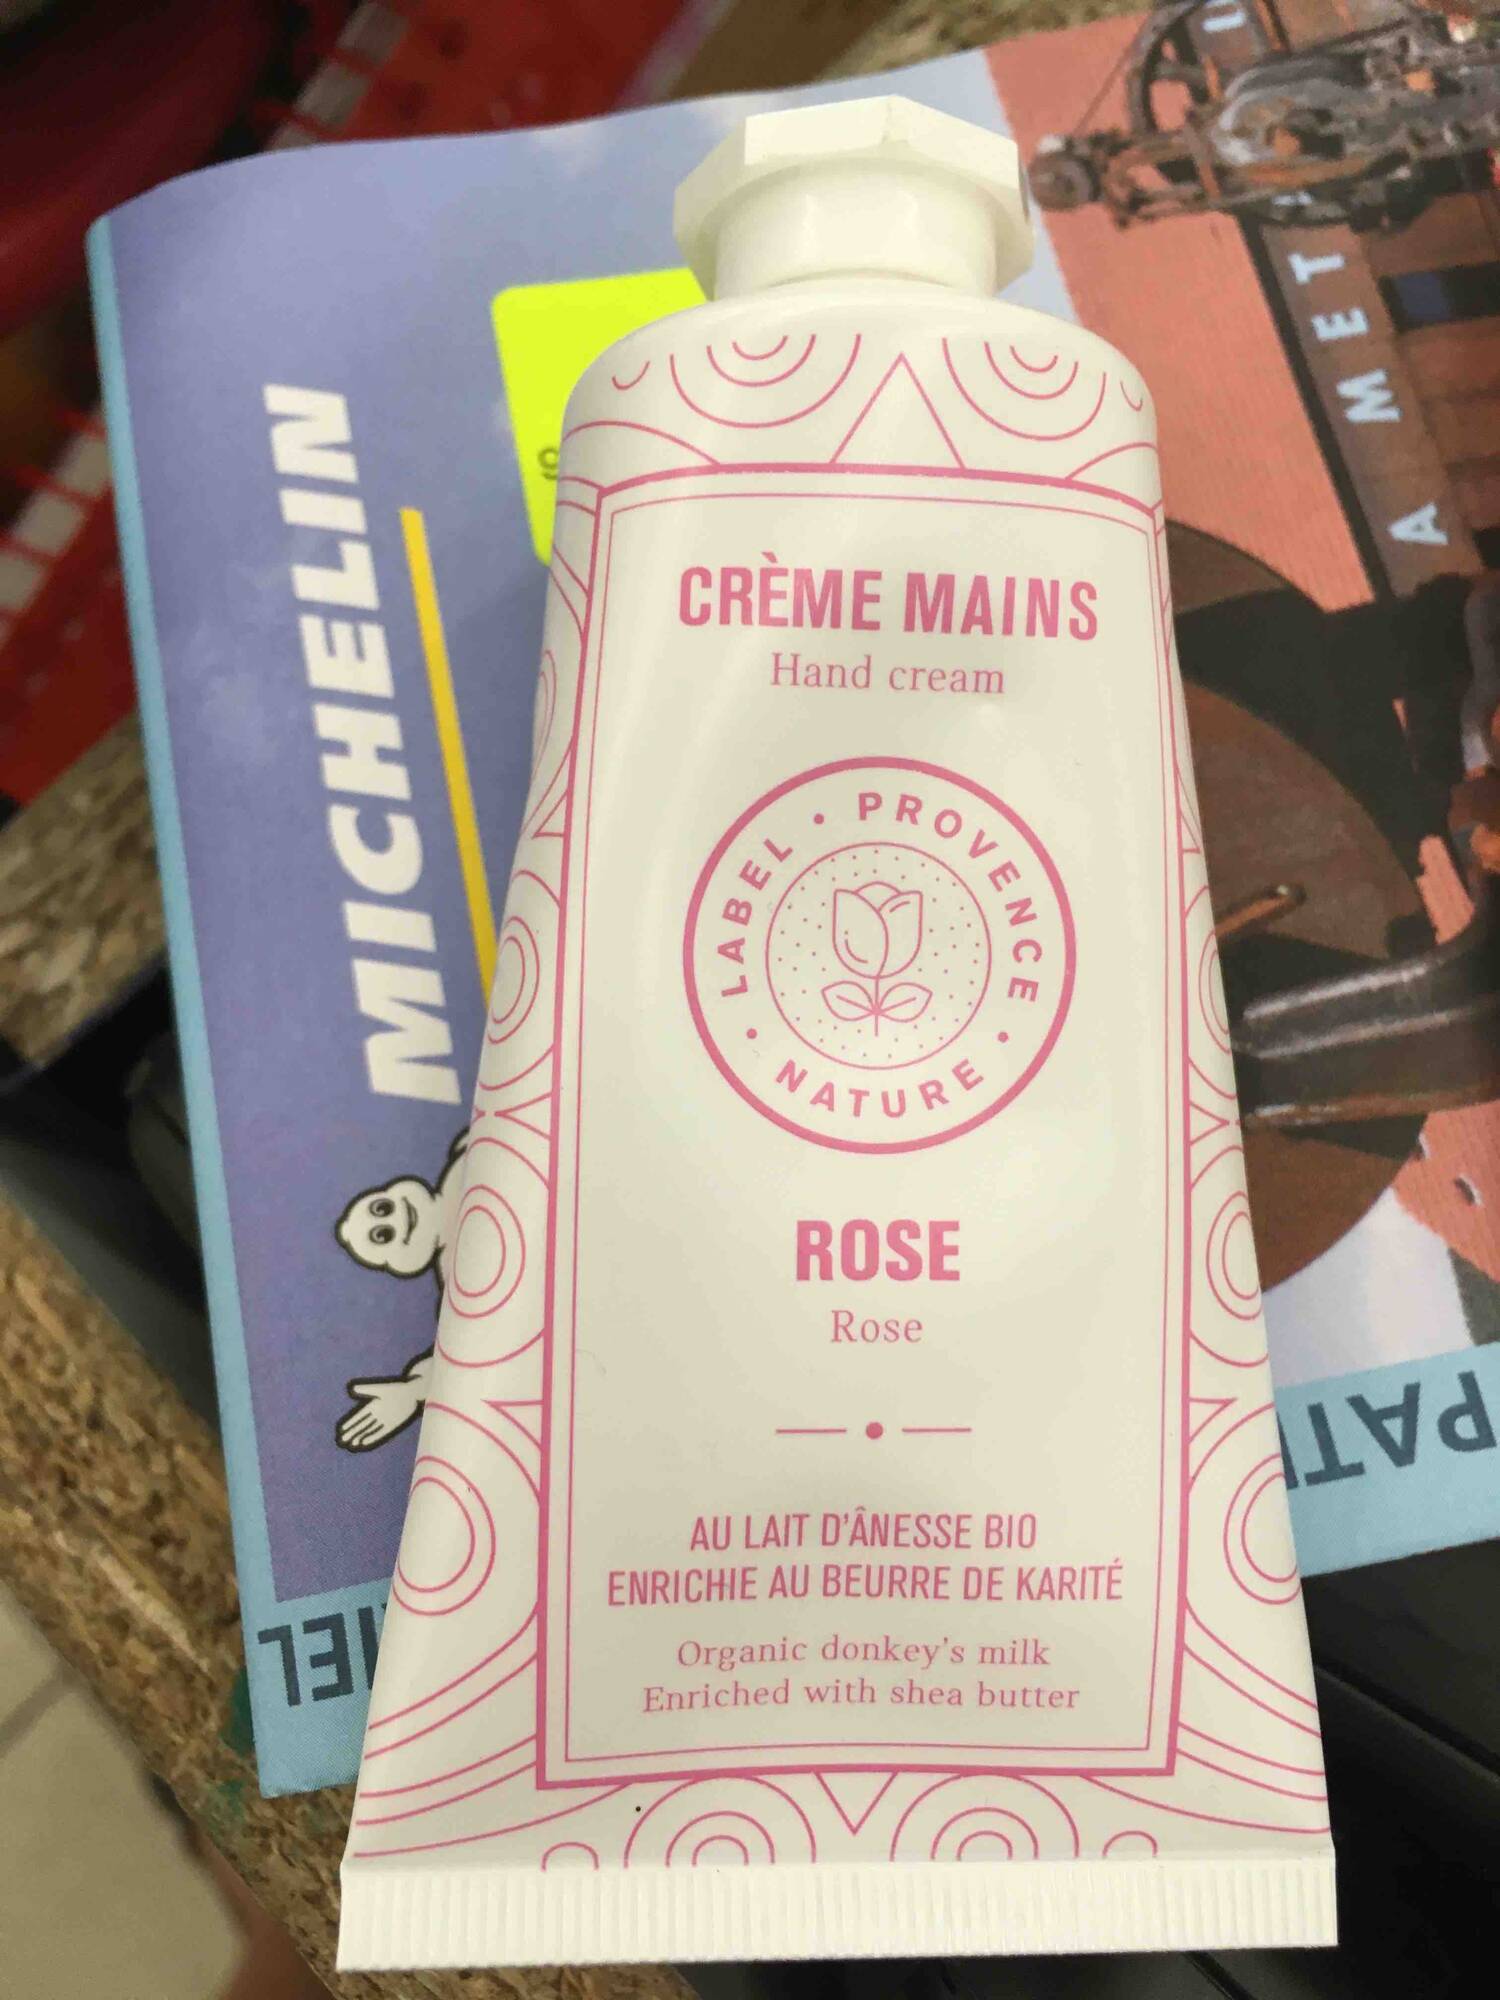 LABEL PROVENCE NATURE - Rose - Crème mains